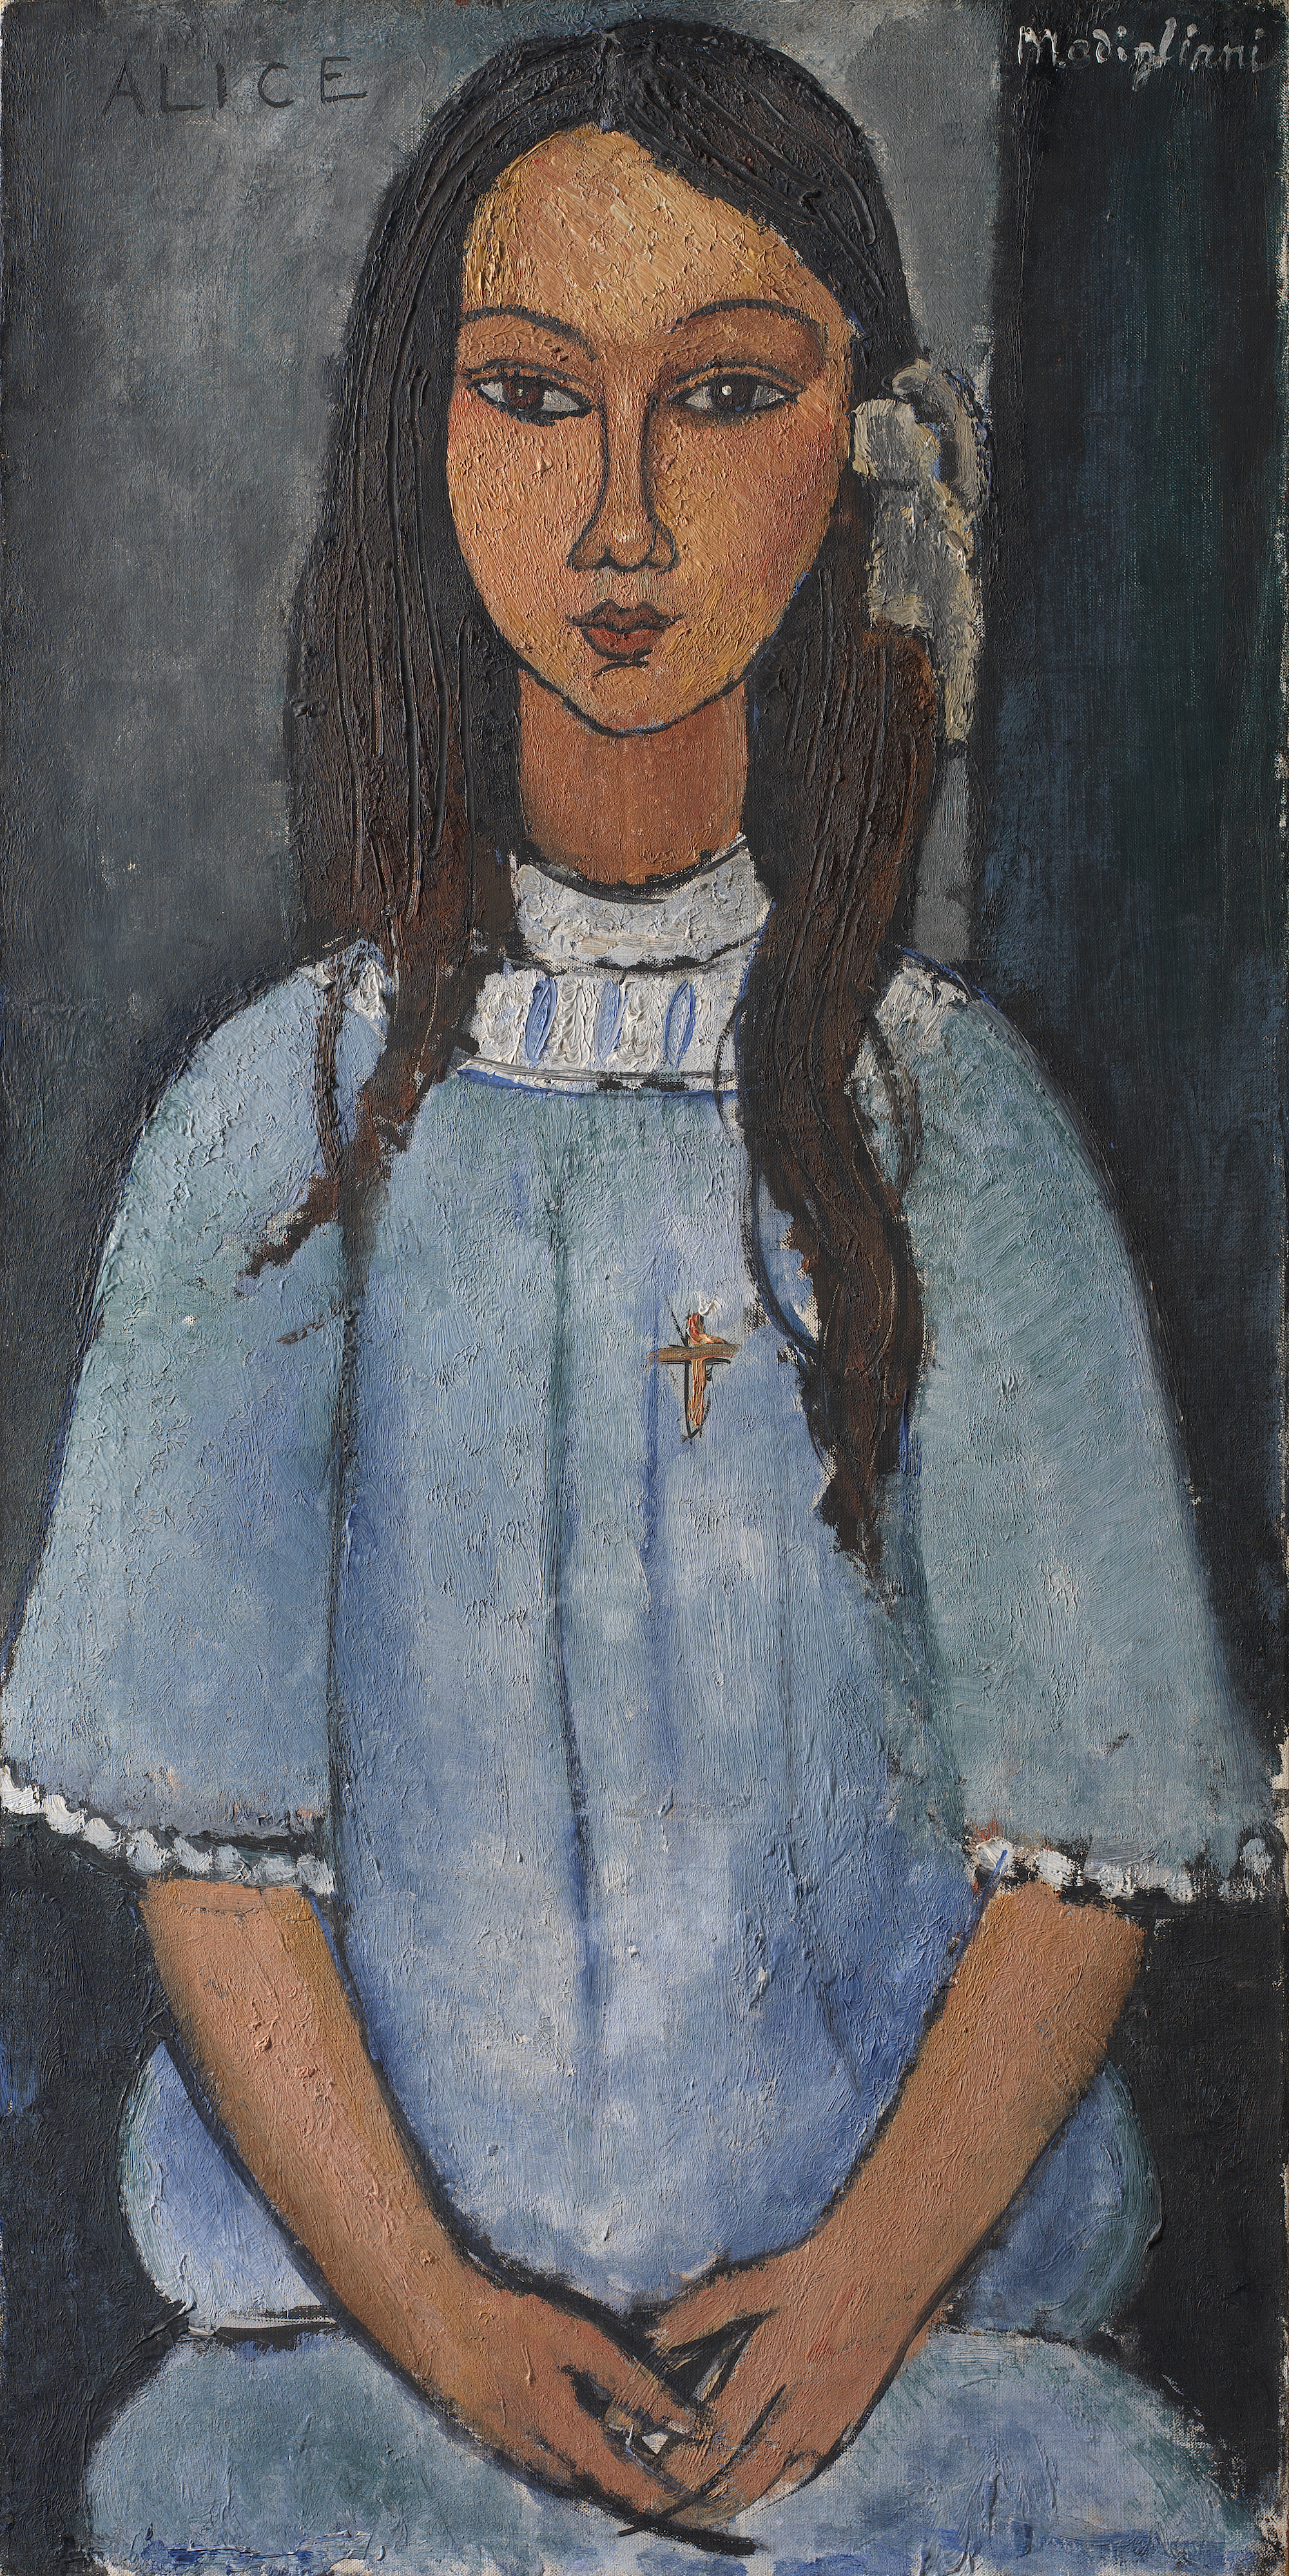 Alice by Amedeo Modigliani - circa 1918 - - 